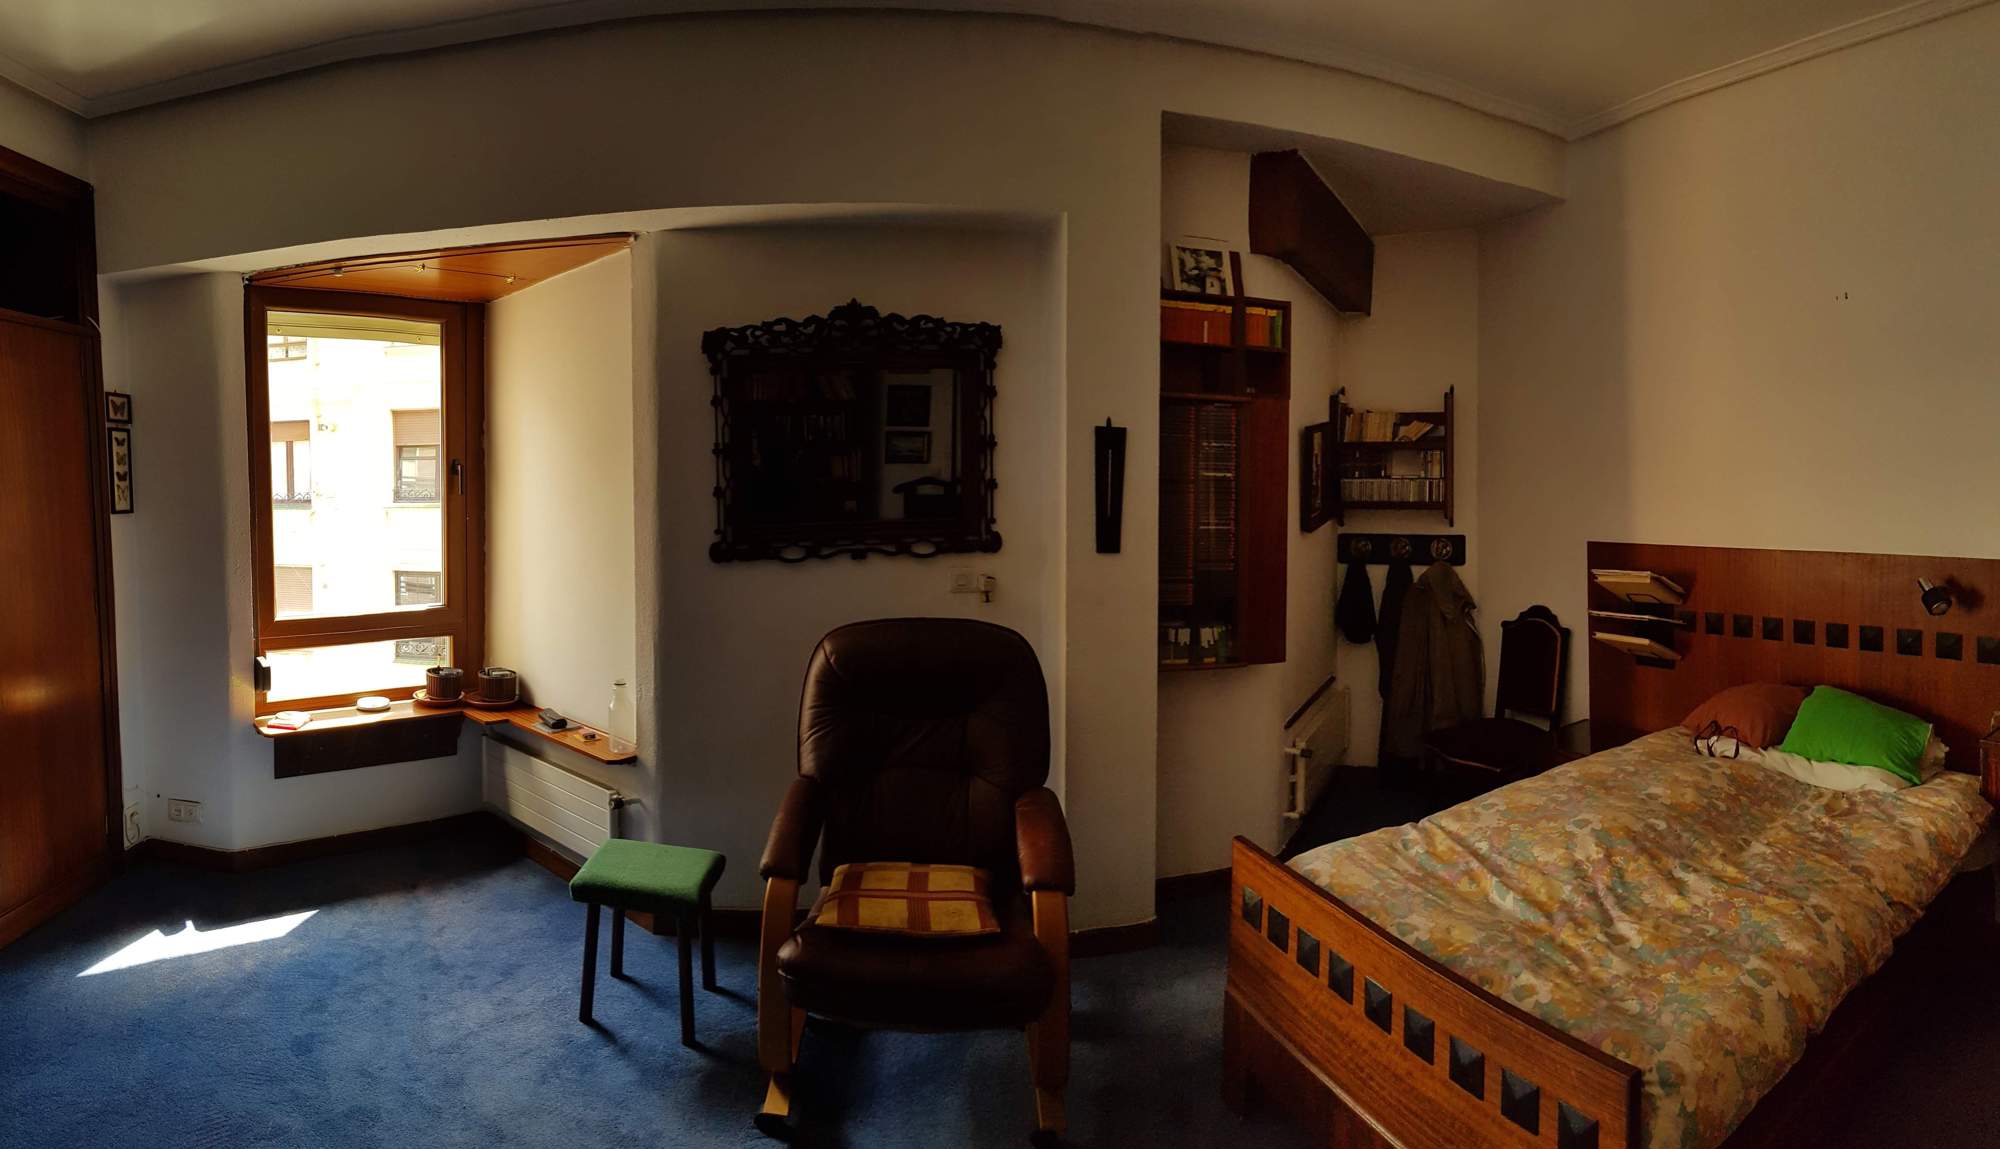 Dormitorio viejo y sin estilo.